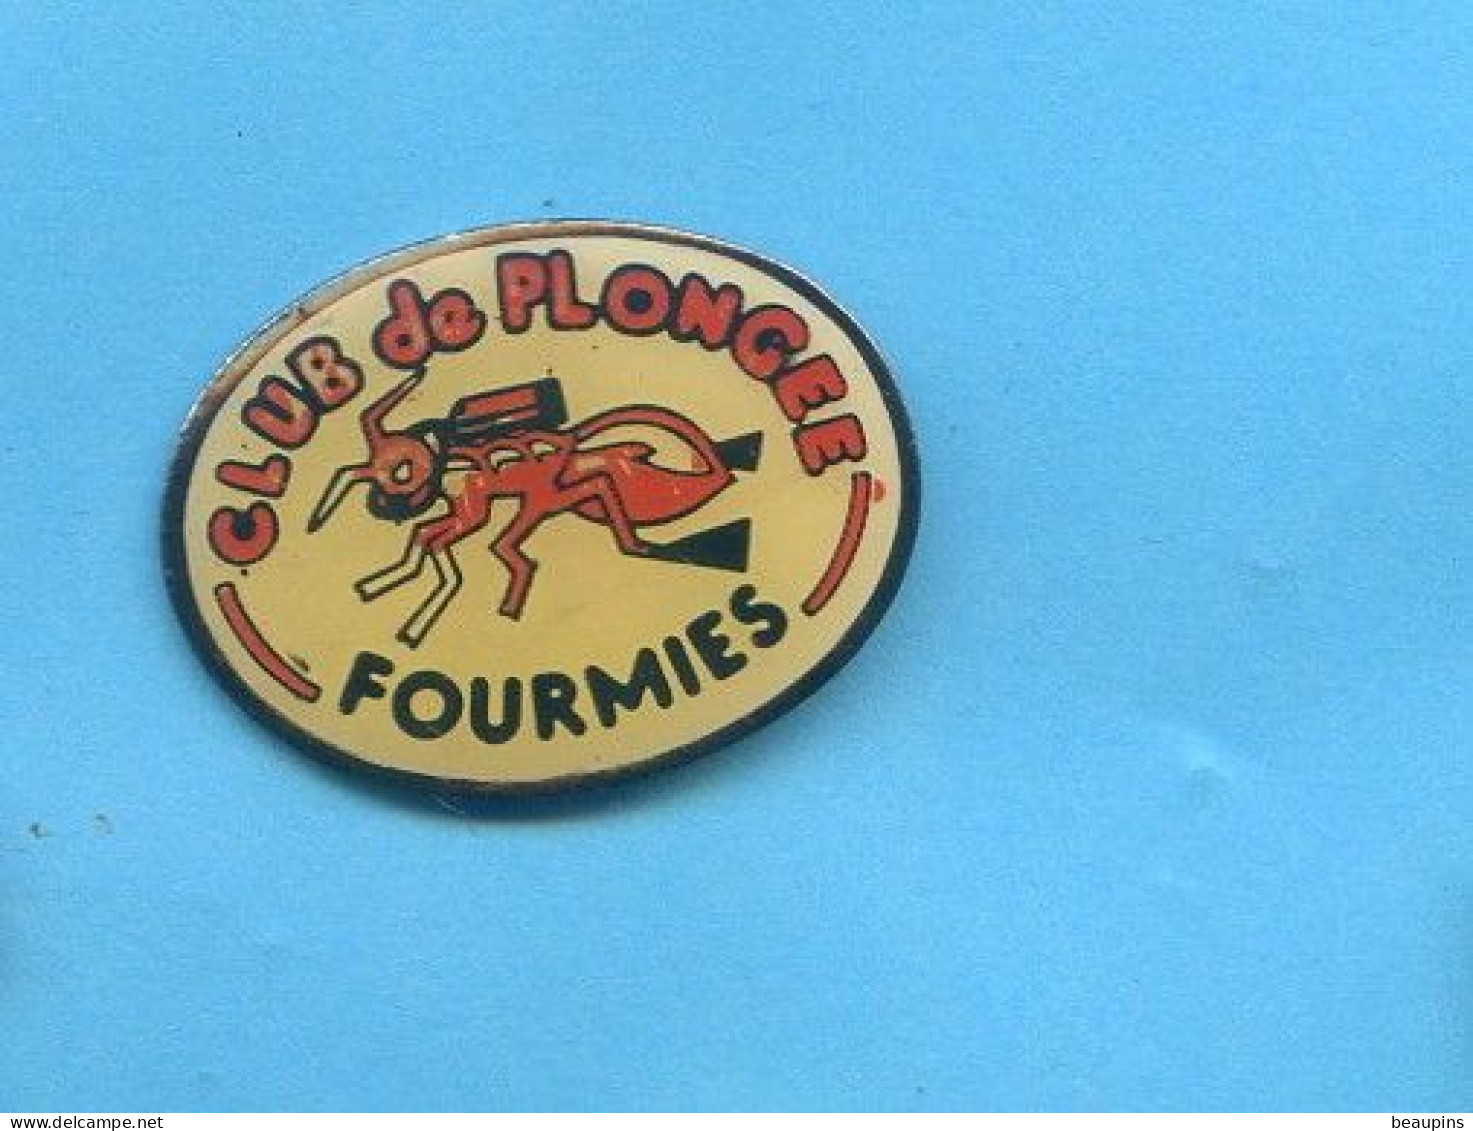 Rare Pins Plongee Club Fourmies Fr172 - Tauchen